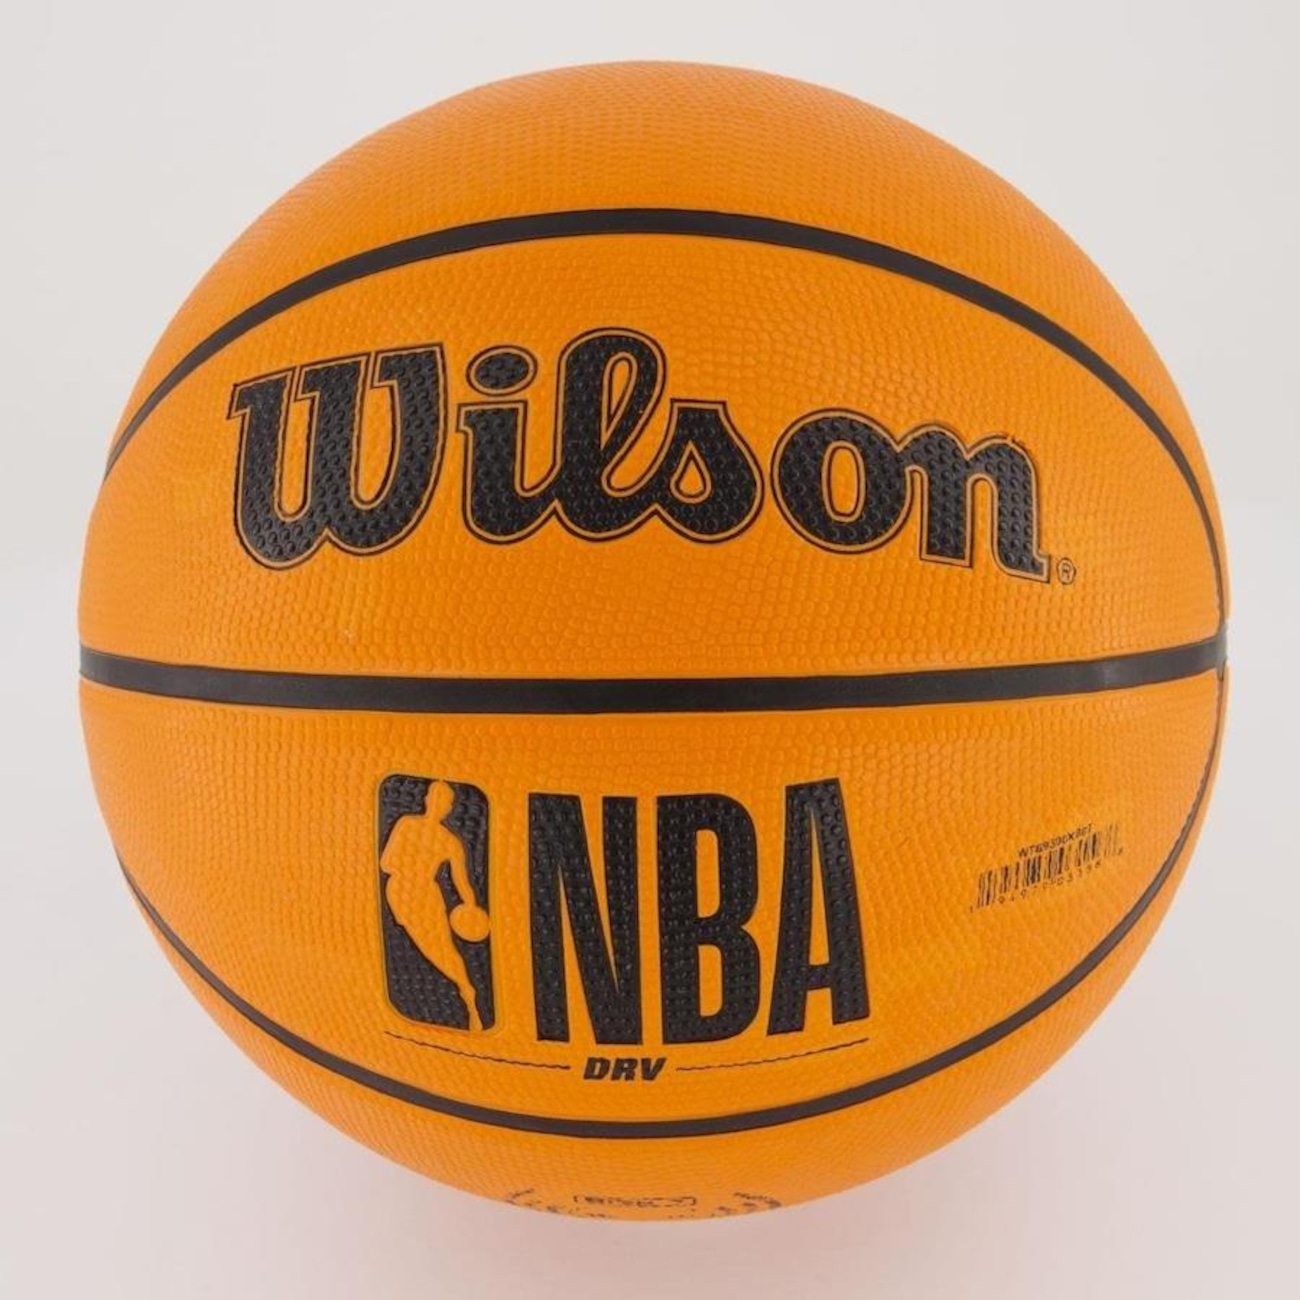 Bola de Basquete Wilson NBA DRV